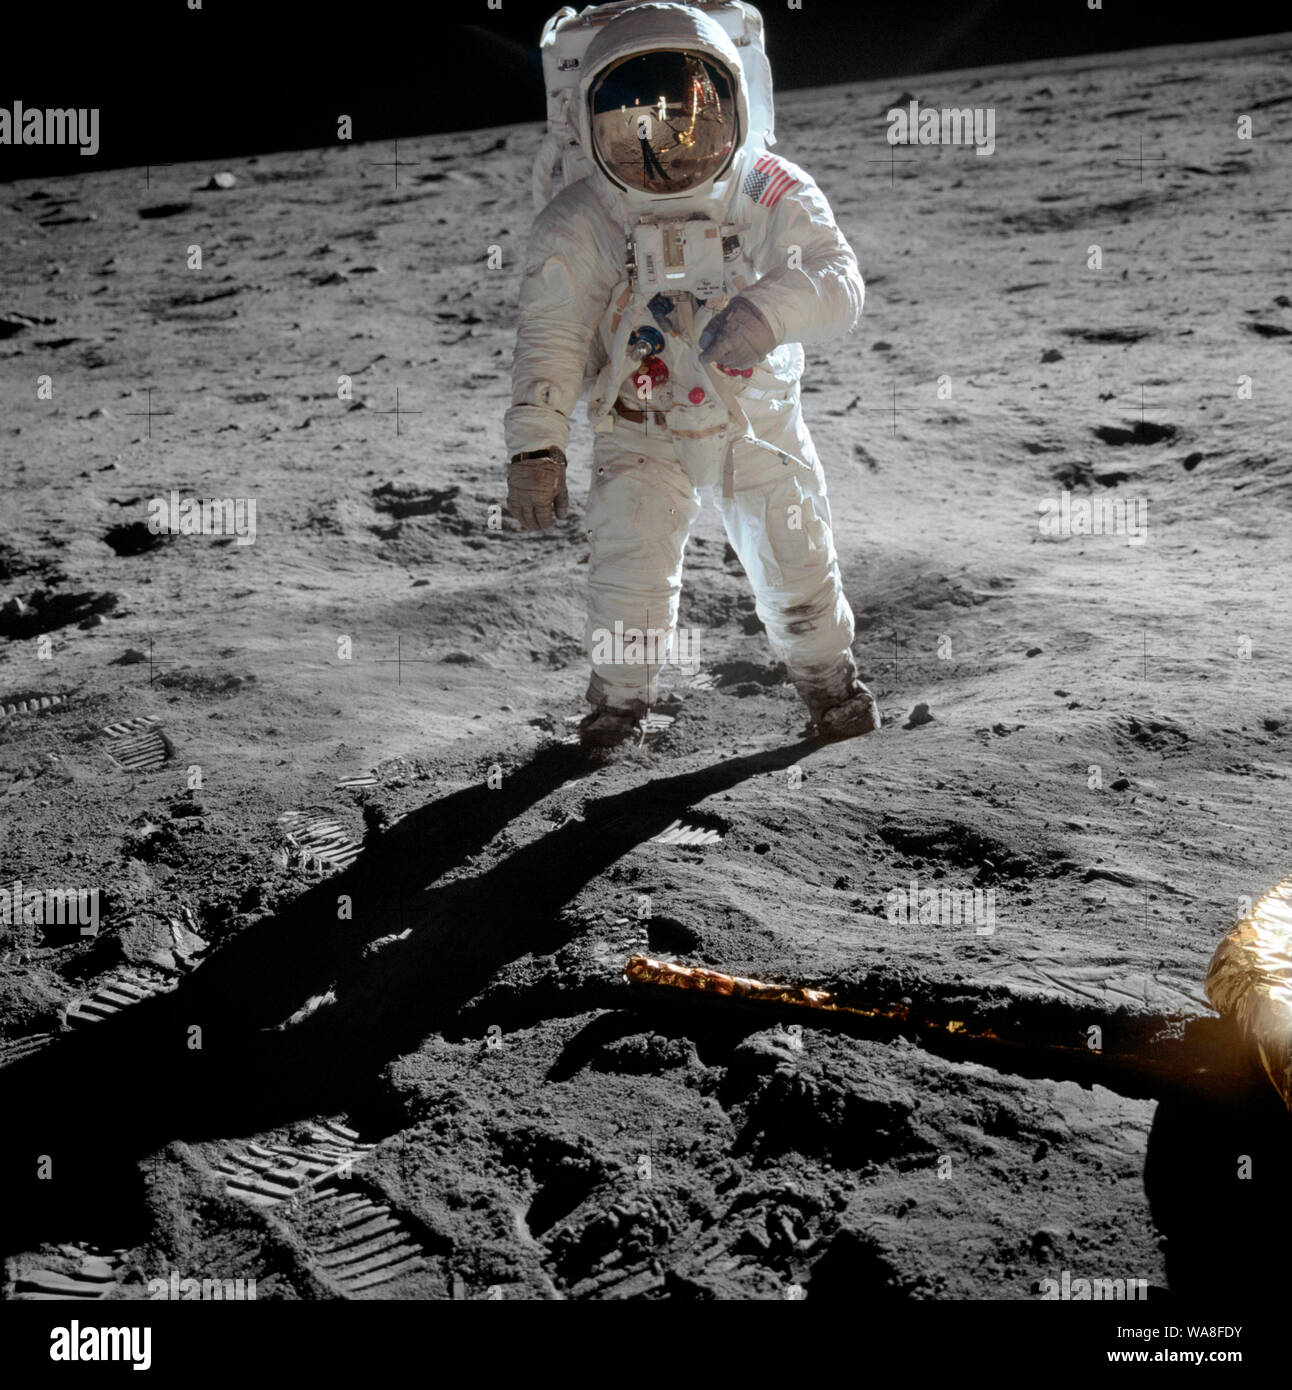 El astronauta Buzz Aldrin en la luna - El astronauta Buzz Aldrin, piloto del módulo lunar, se encuentra sobre la superficie de la luna, cerca de la pata del módulo lunar, Eagle, durante el Apollo 11 moonwalk. El astronauta Neil Armstrong, comandante de la misión, tomó esta fotografía con una cámara de 70mm de la superficie lunar. Mientras Armstrong y Aldrin descendieron en el módulo lunar para explorar el Mar de la tranquilidad, el astronauta Michael Collins, piloto del módulo de comando, permaneció en órbita lunar con el módulo de mando y servicio, Columbia. Julio de 1969 Foto de stock